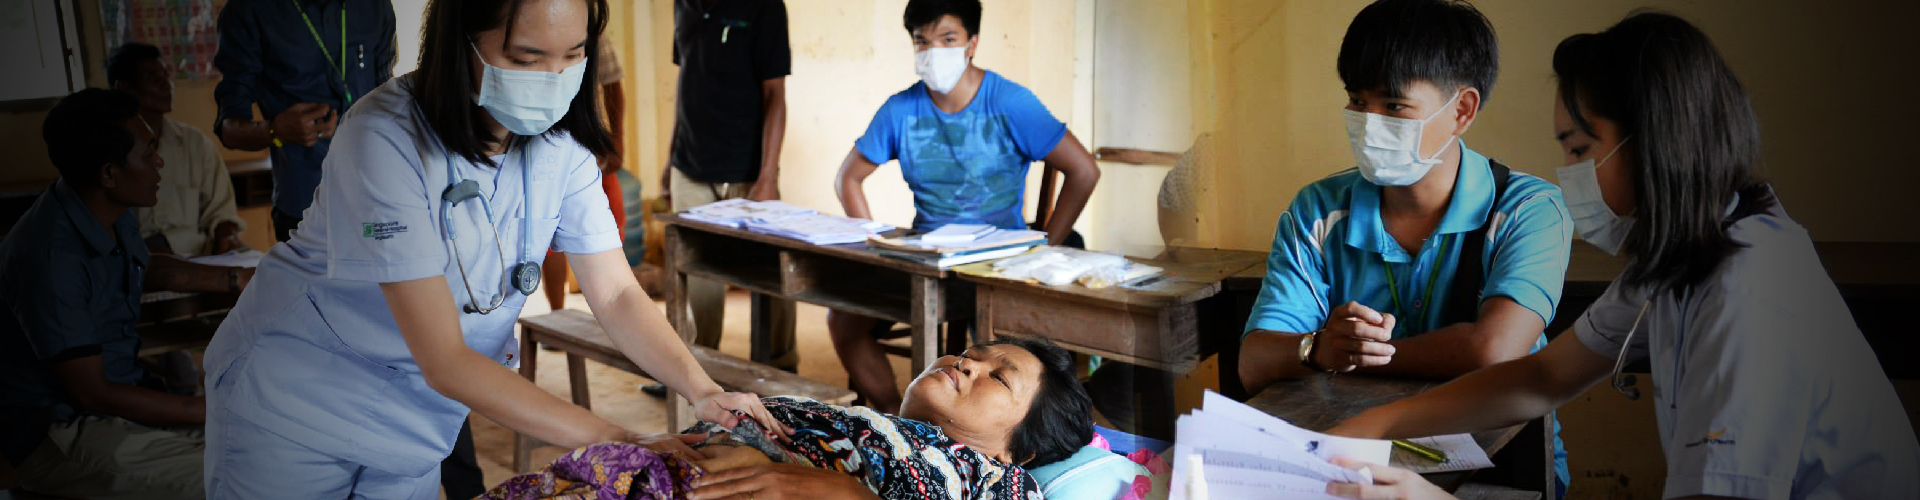 Programa de Voluntariado Médico no Camboja